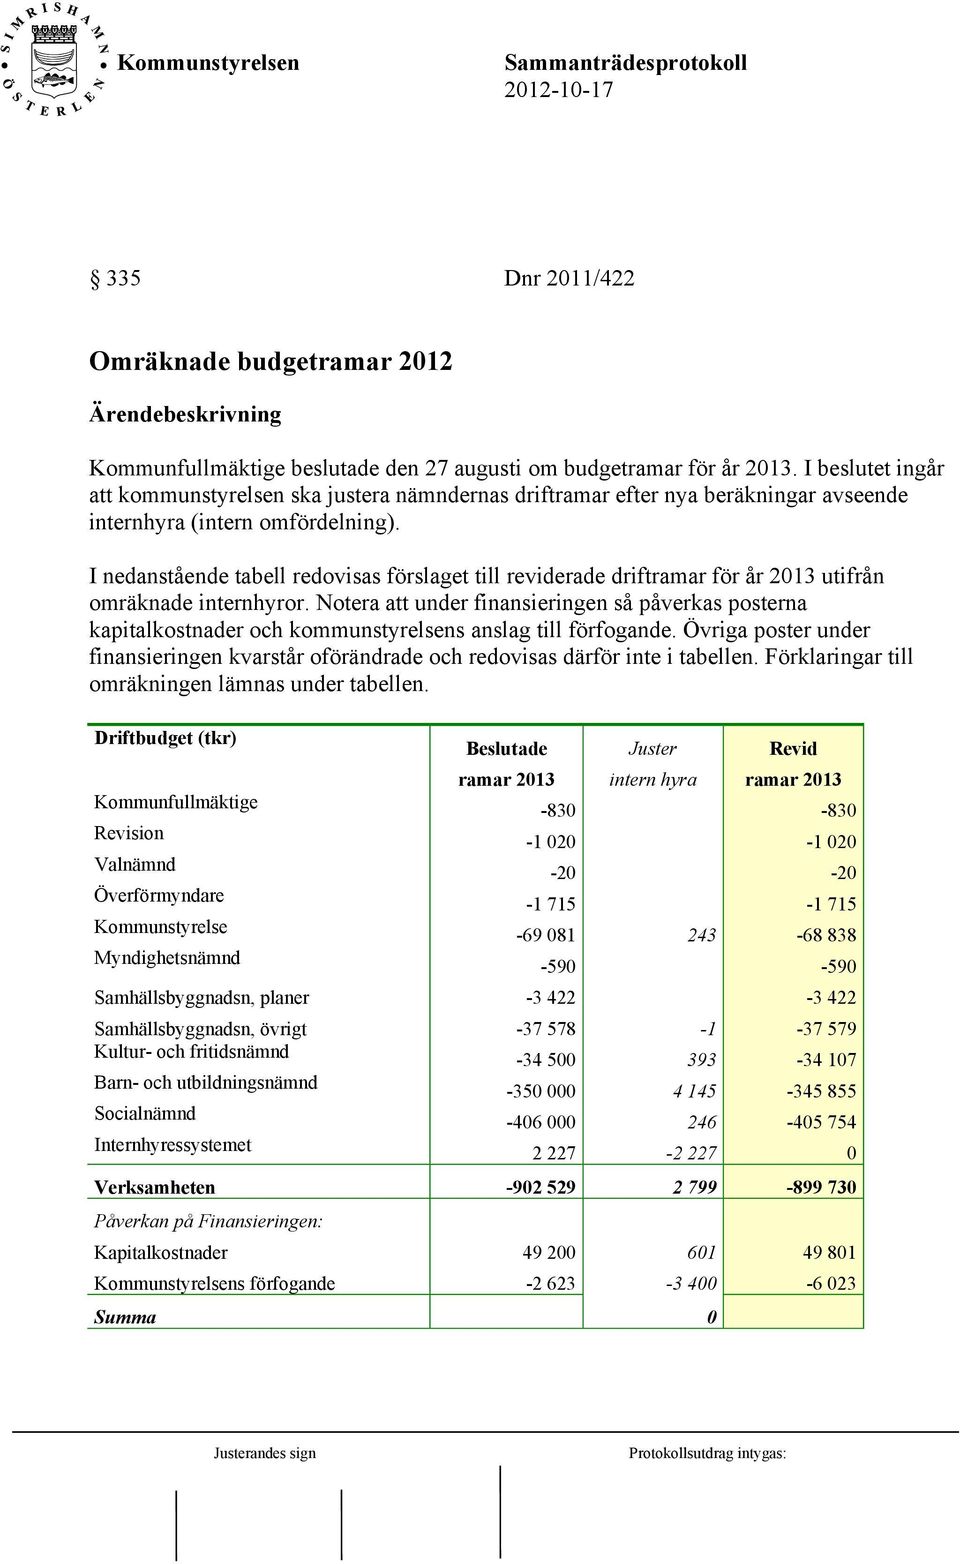 I nedanstående tabell redovisas förslaget till reviderade driftramar för år 2013 utifrån omräknade internhyror.